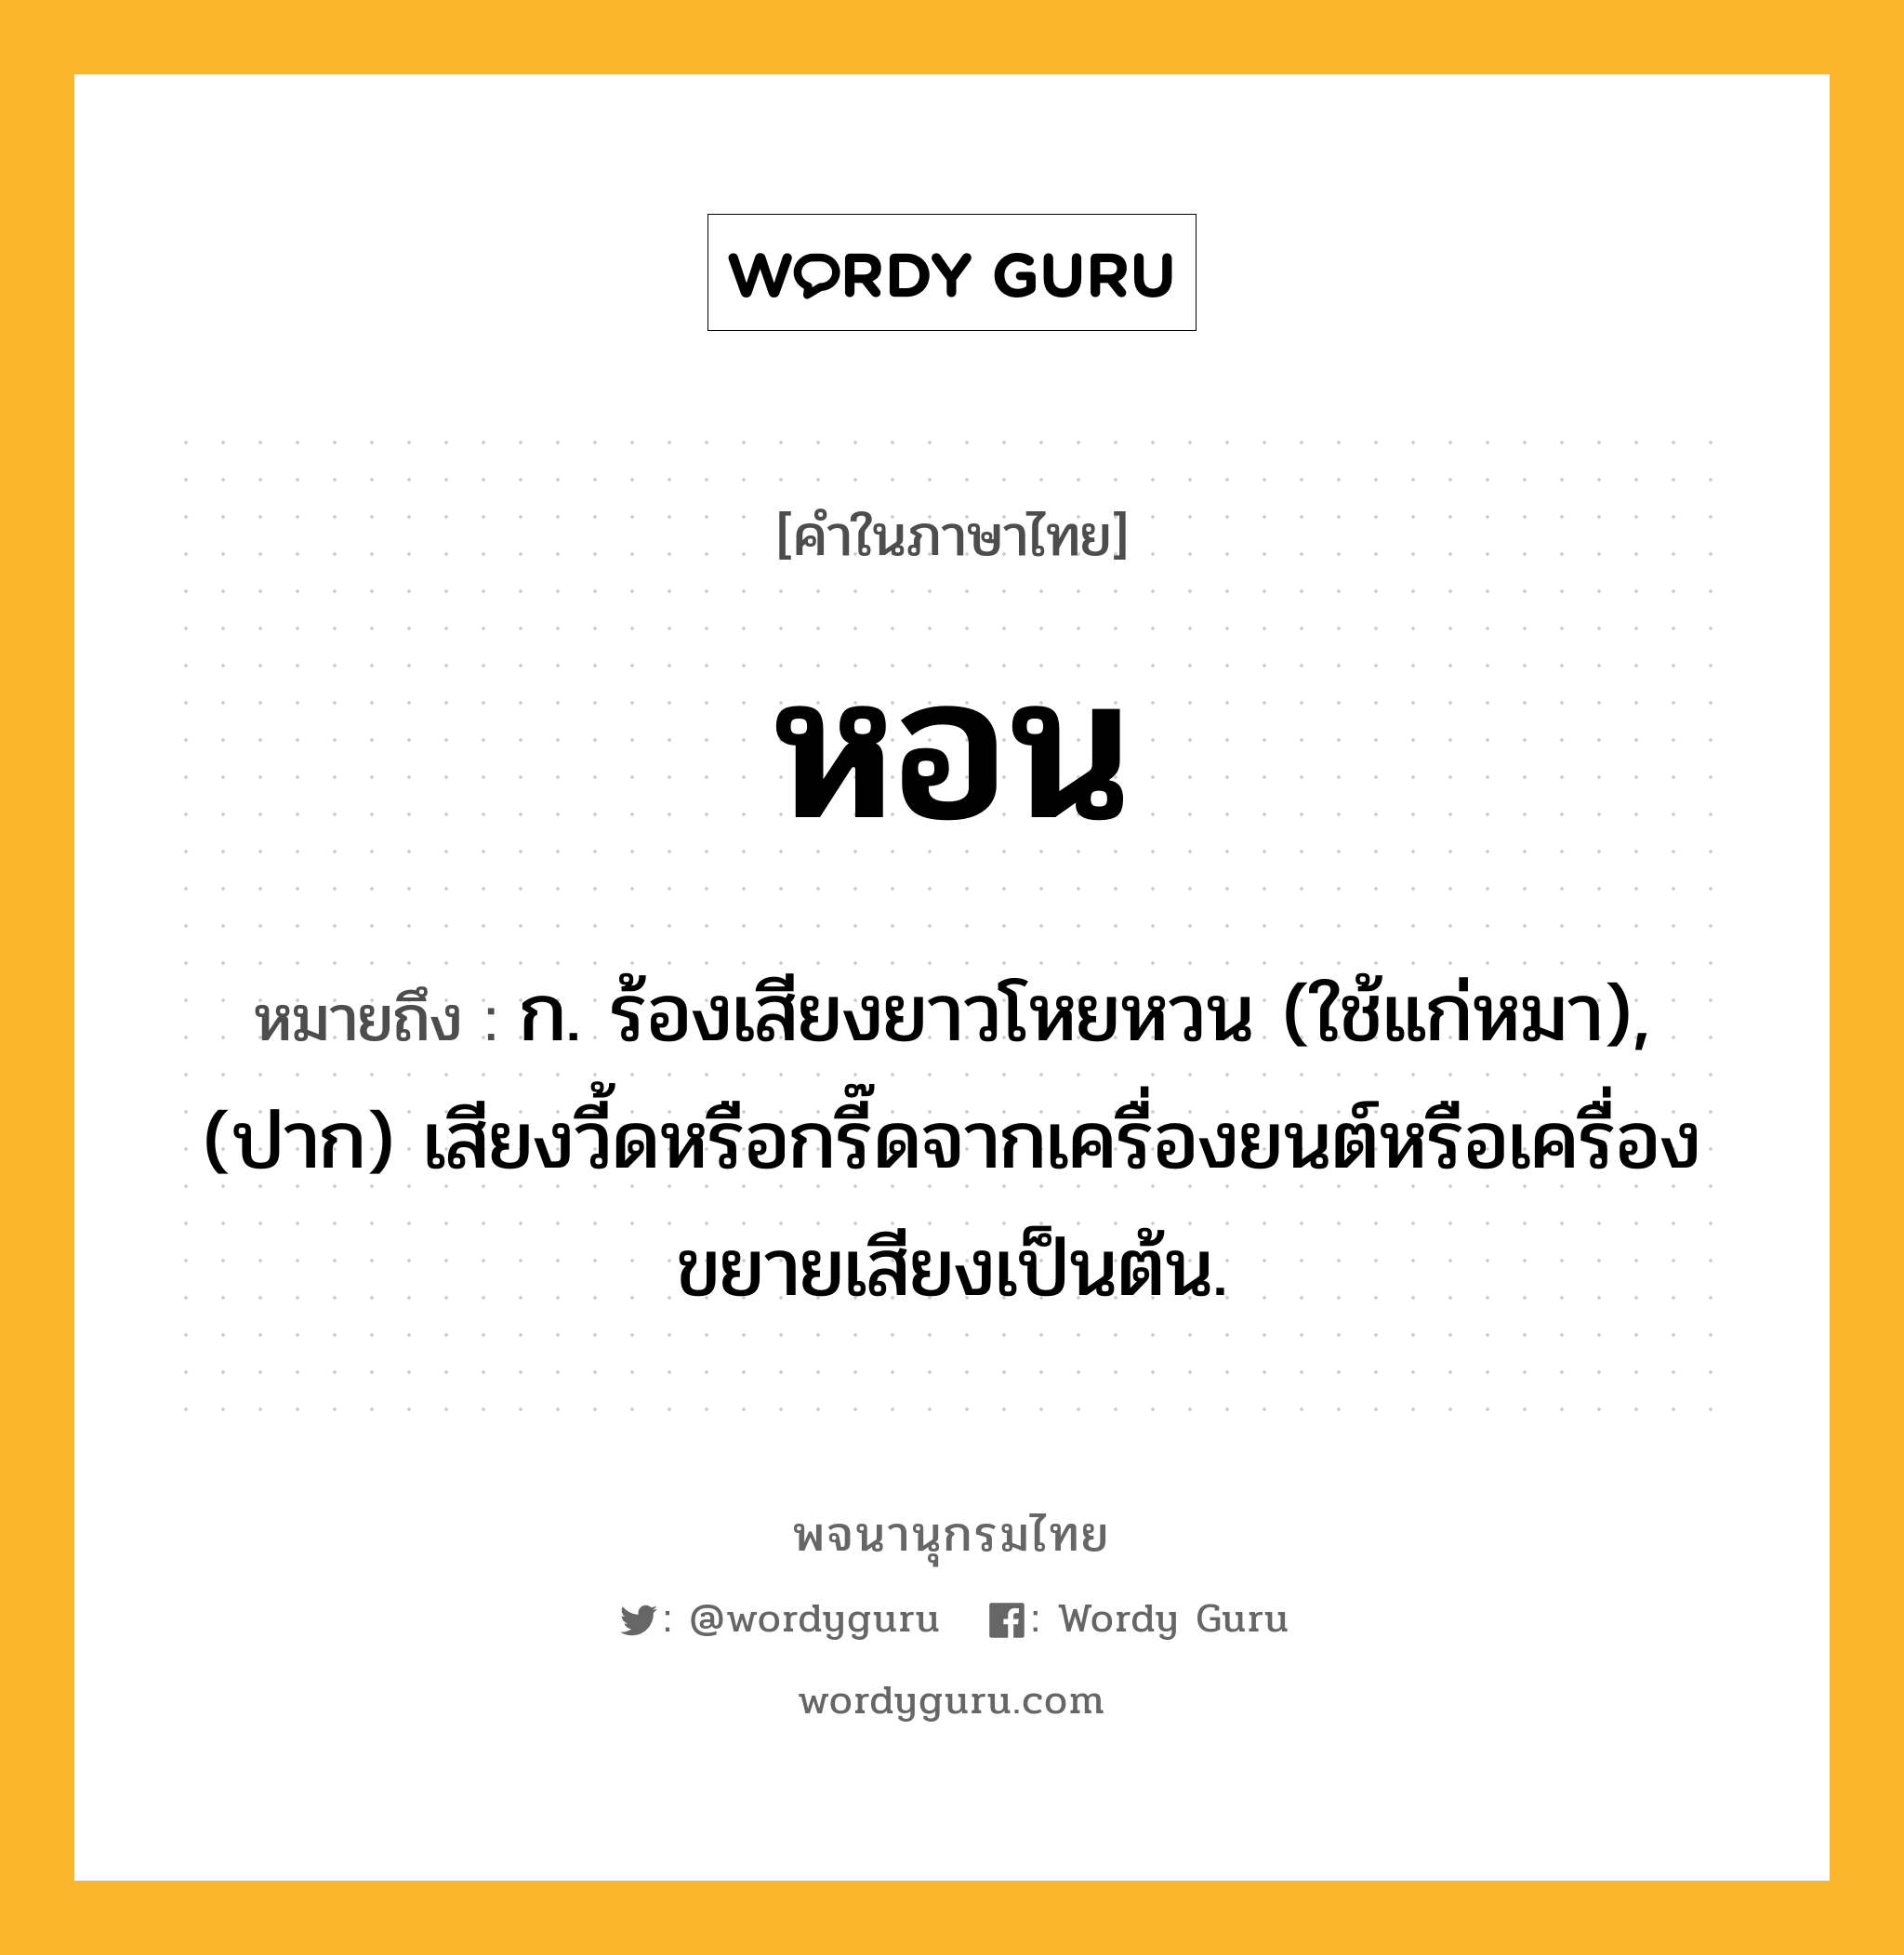 หอน หมายถึงอะไร?, คำในภาษาไทย หอน หมายถึง ก. ร้องเสียงยาวโหยหวน (ใช้แก่หมา), (ปาก) เสียงวี้ดหรือกรี๊ดจากเครื่องยนต์หรือเครื่องขยายเสียงเป็นต้น.